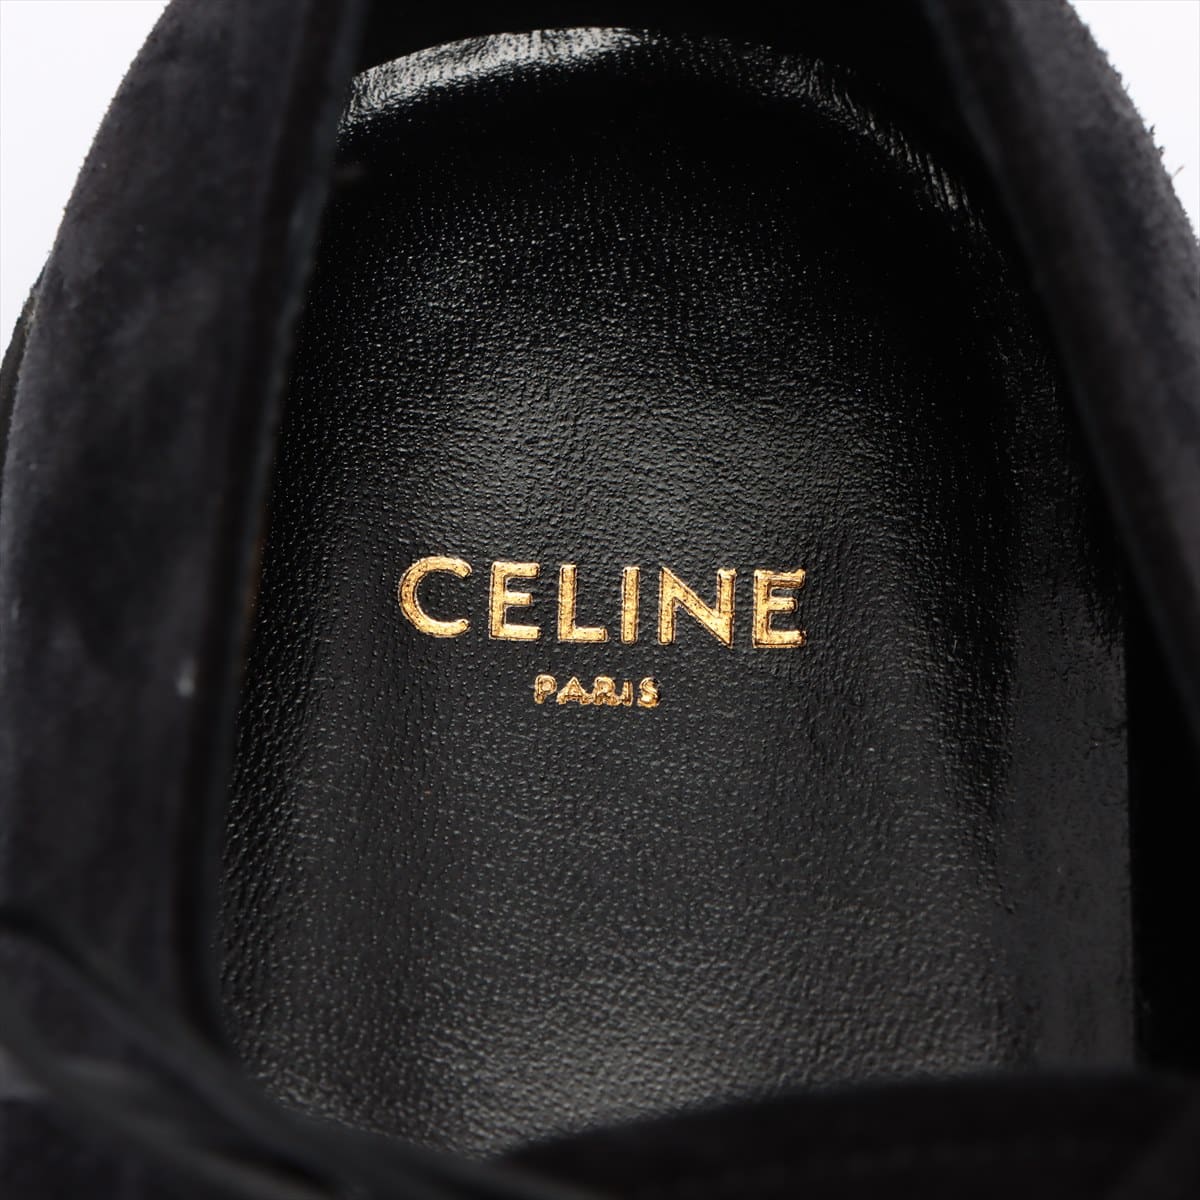 CELINE(セリーヌ) シューズ 40 メンズ - 黒